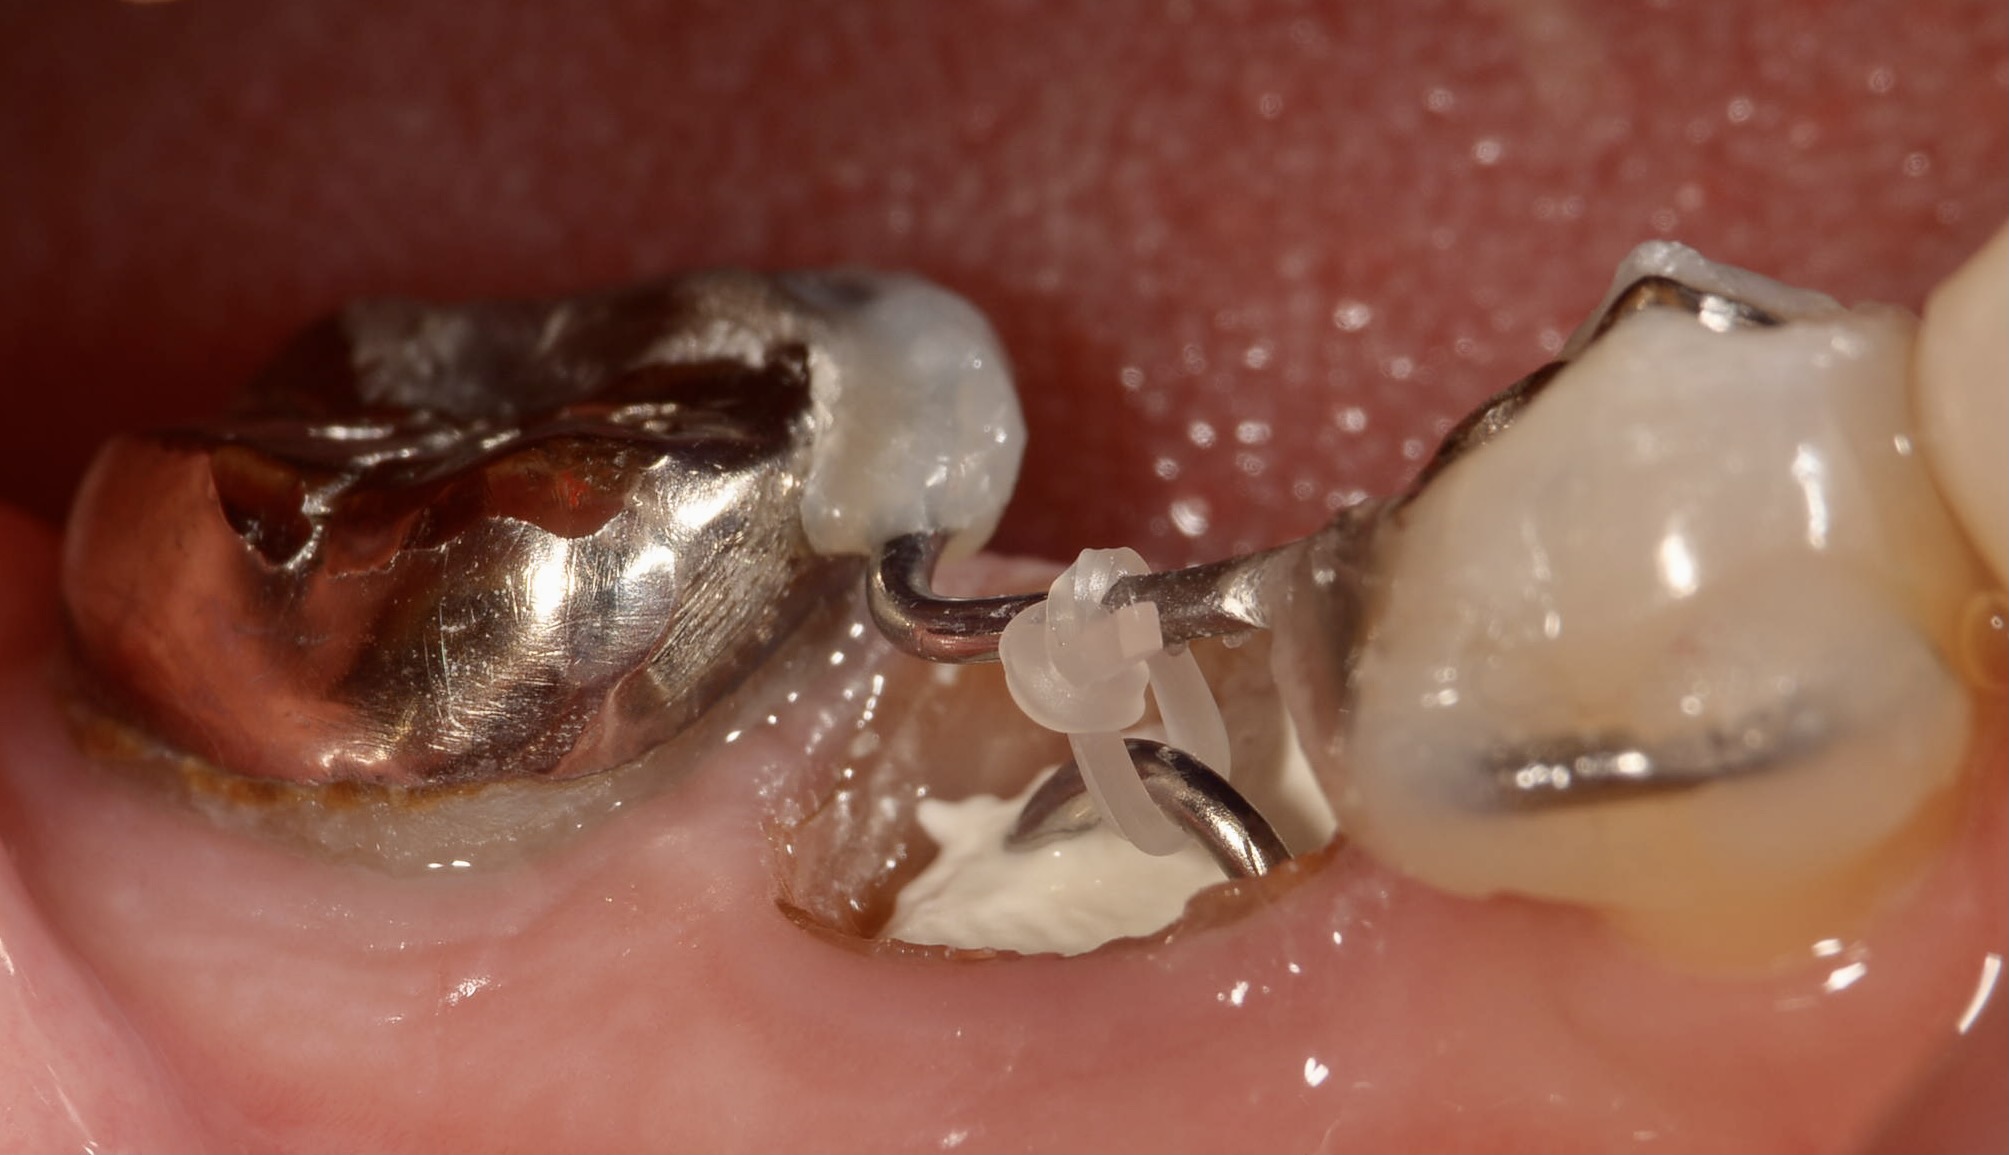 エクストルージョン法により他院で抜歯と診断された歯を保存した症例